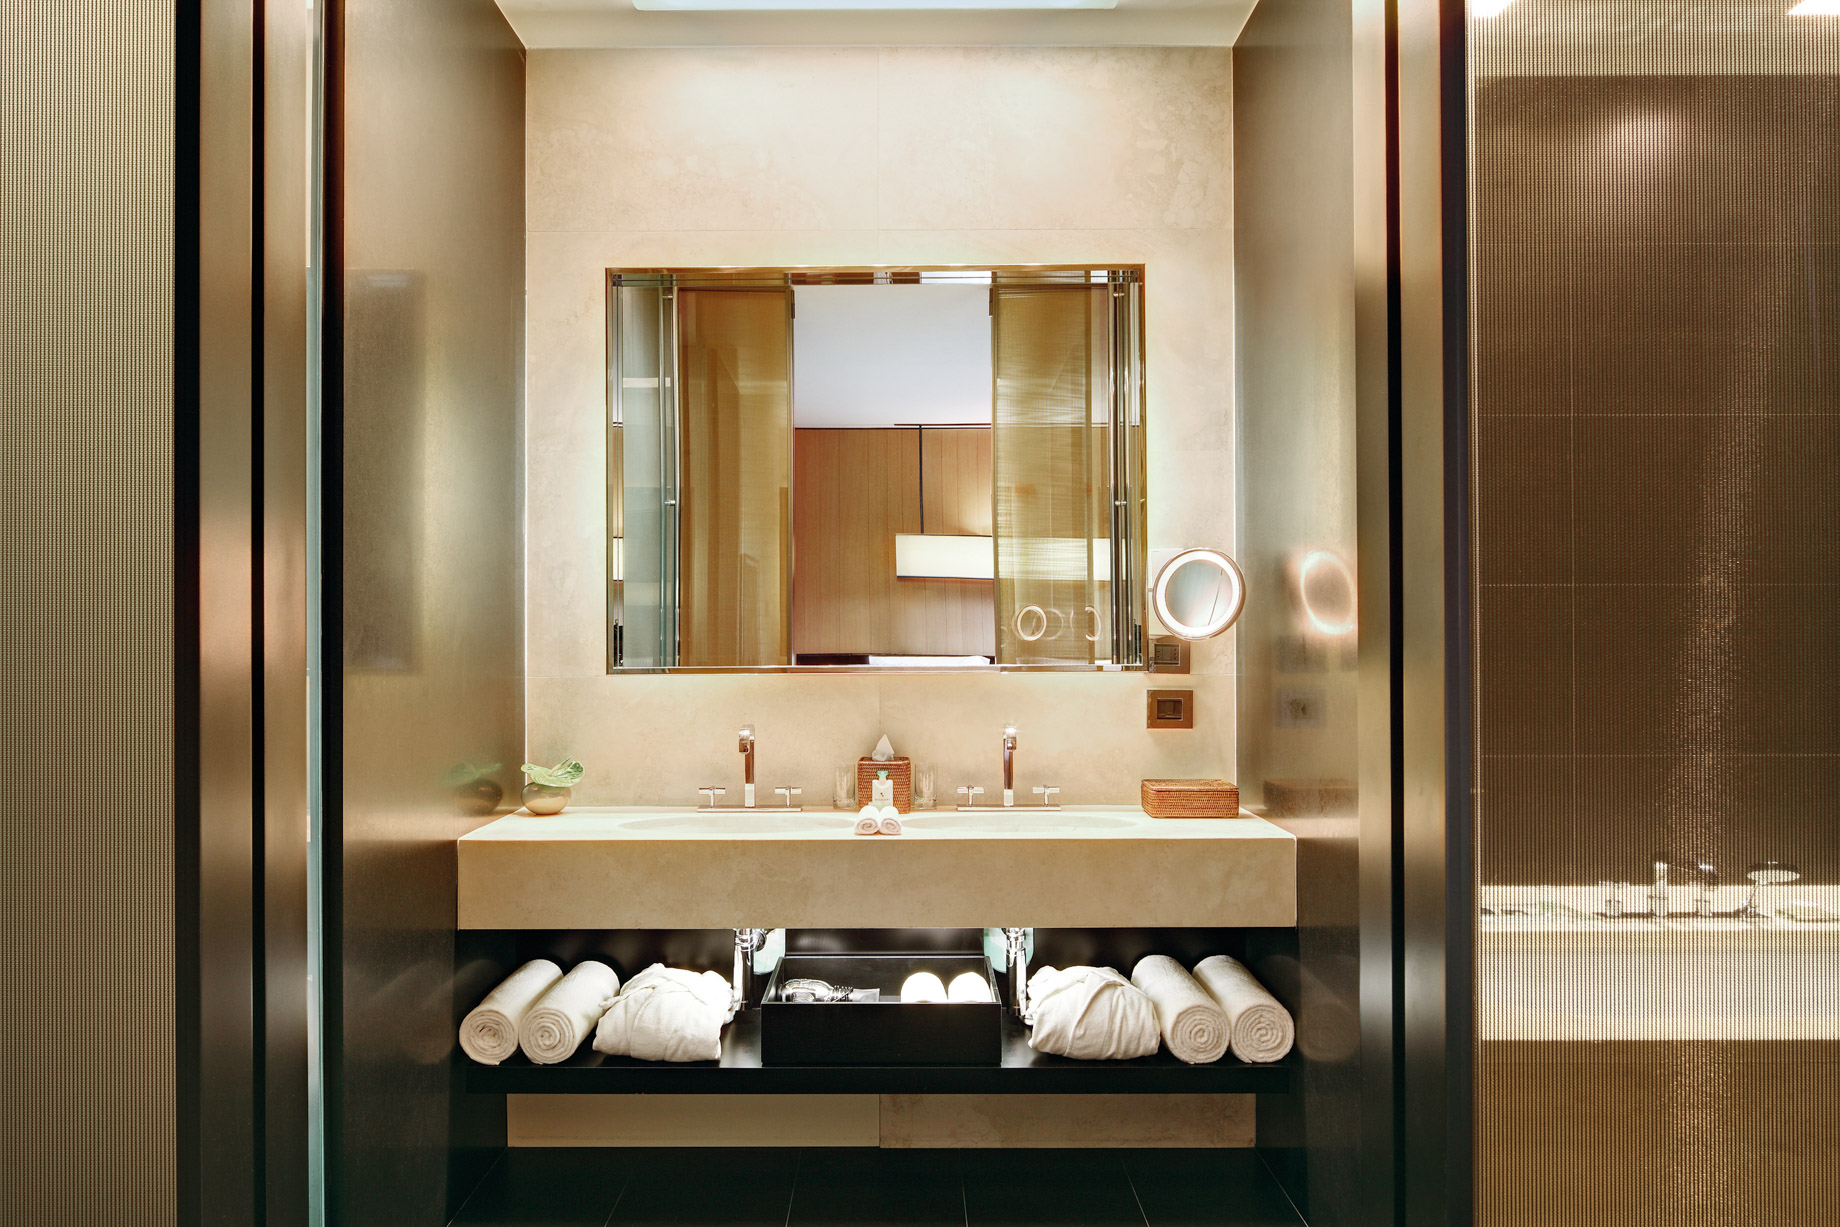 Bvlgari Hotel Milano – Milan, Italy – Guest Suite Bathroom